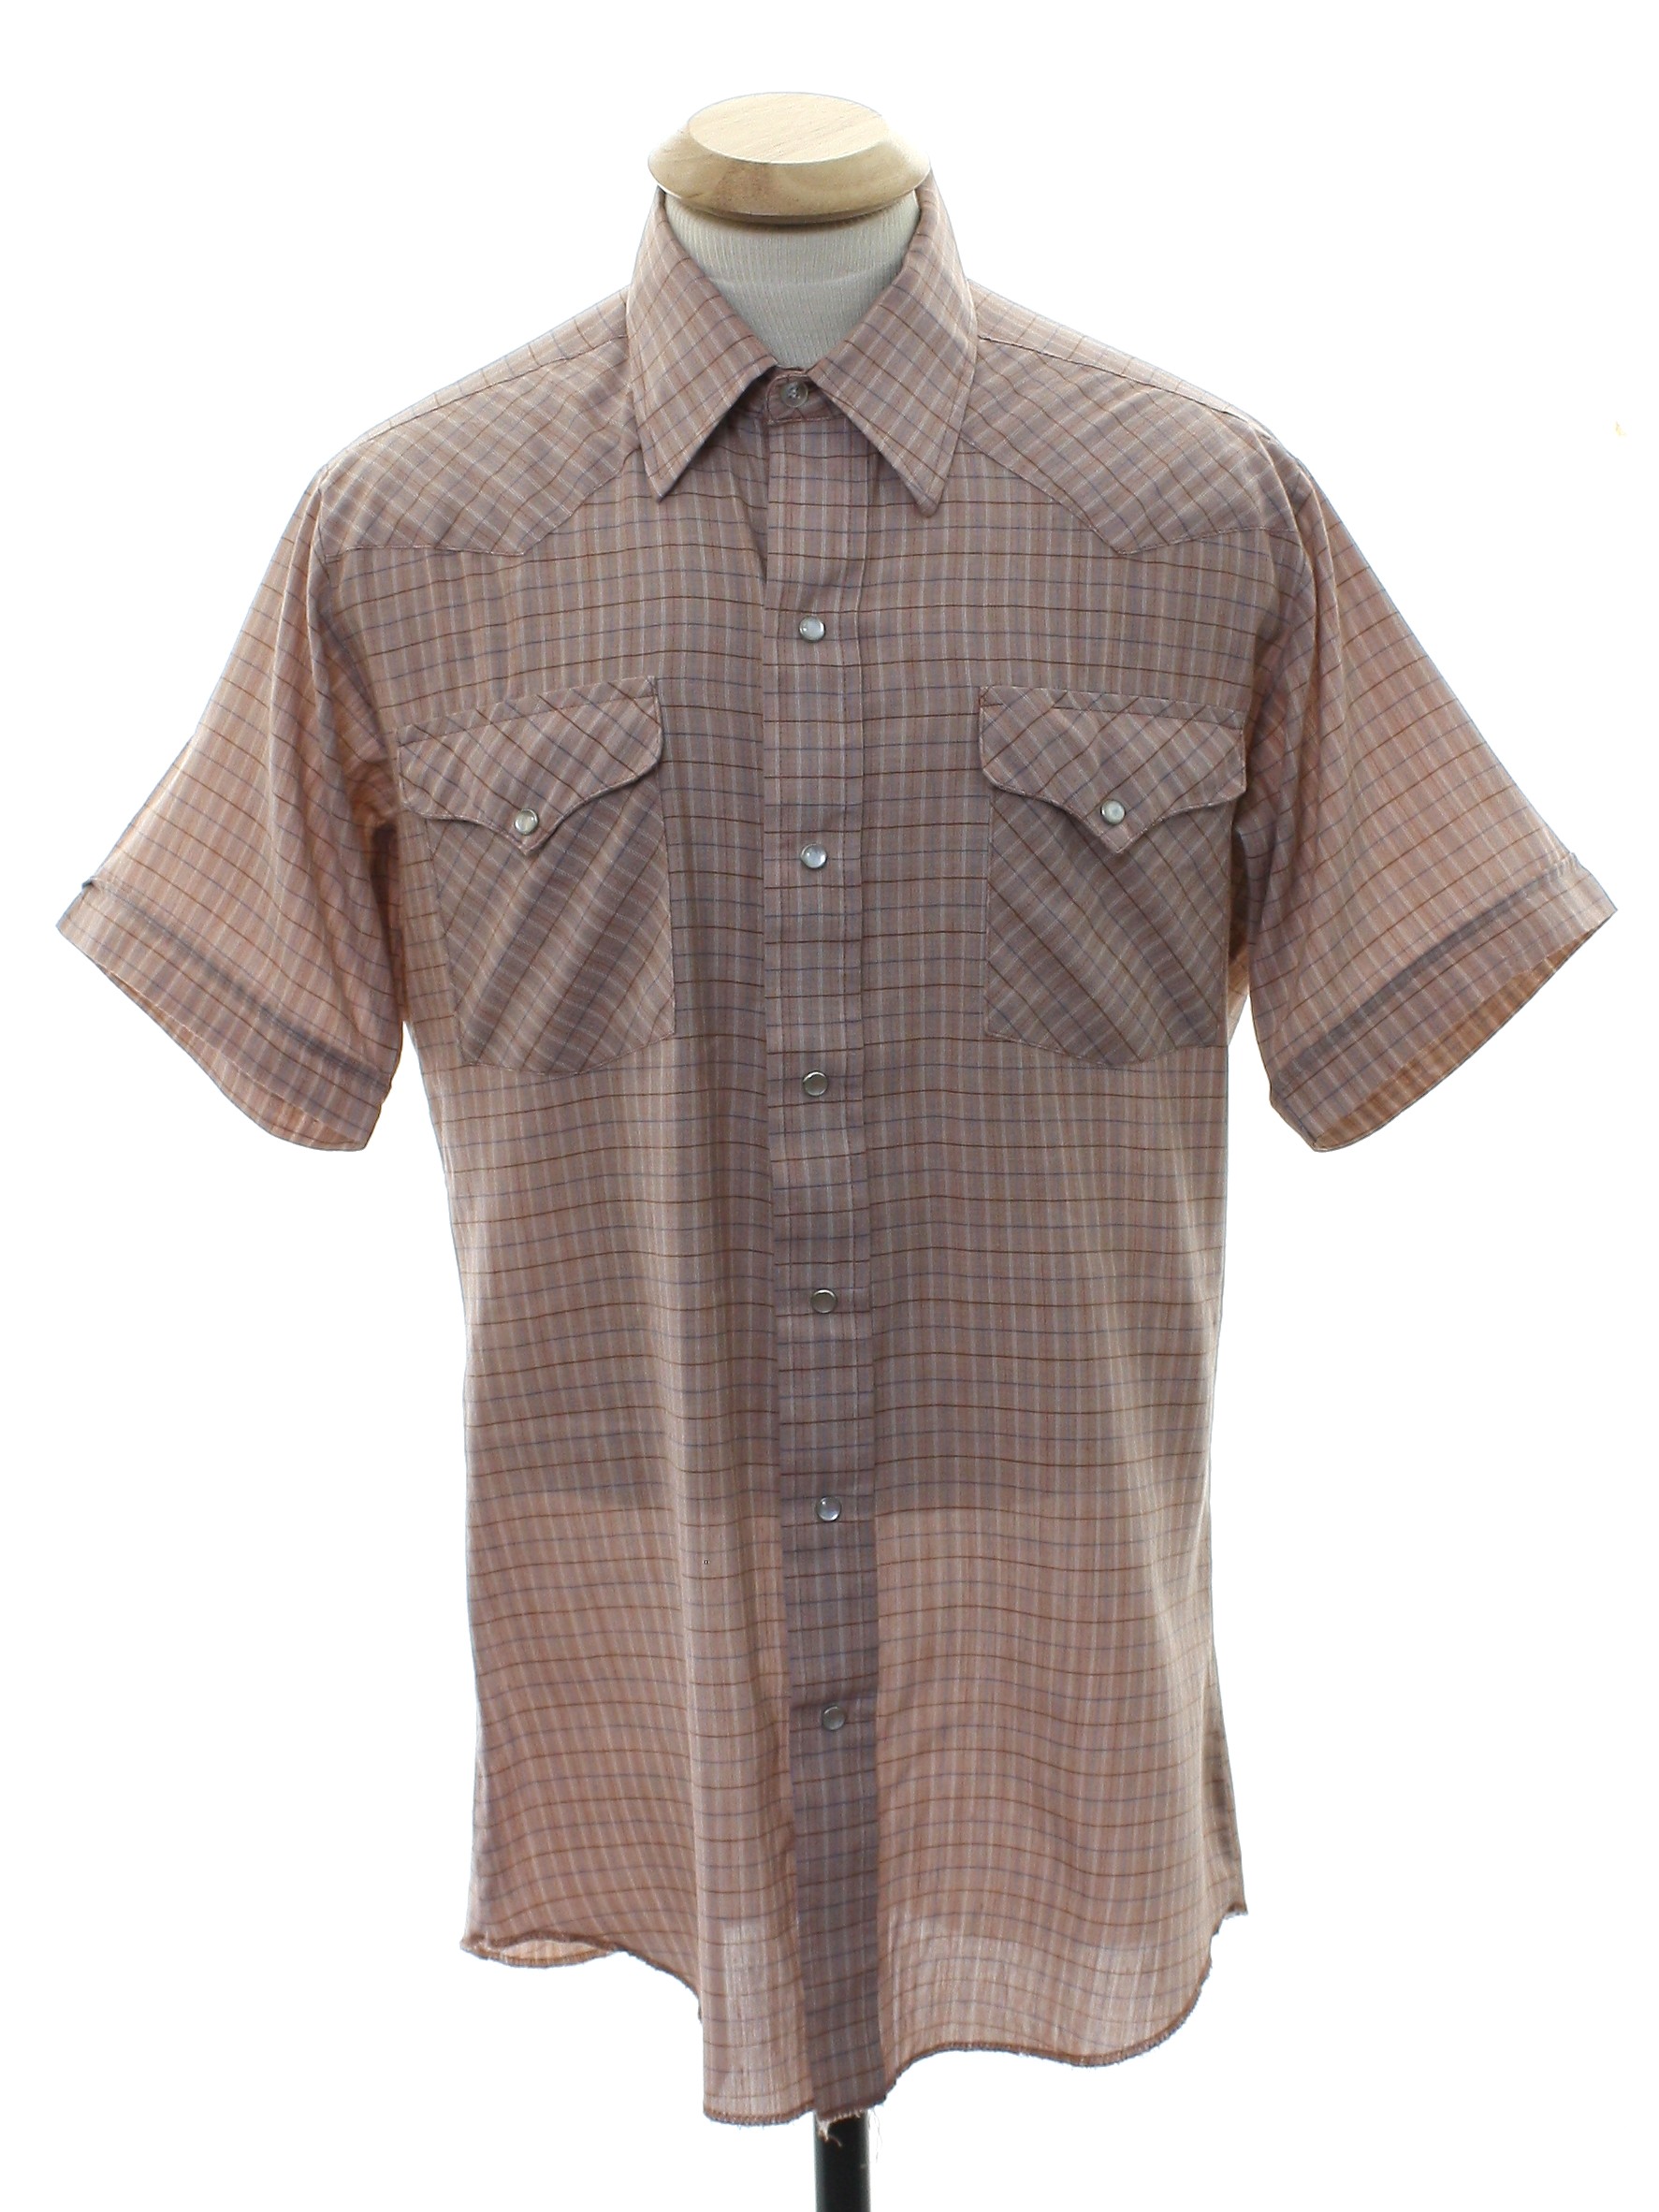 Retro Nineties Western Shirt: 90s -Panhandle Slim- Mens light brown ...